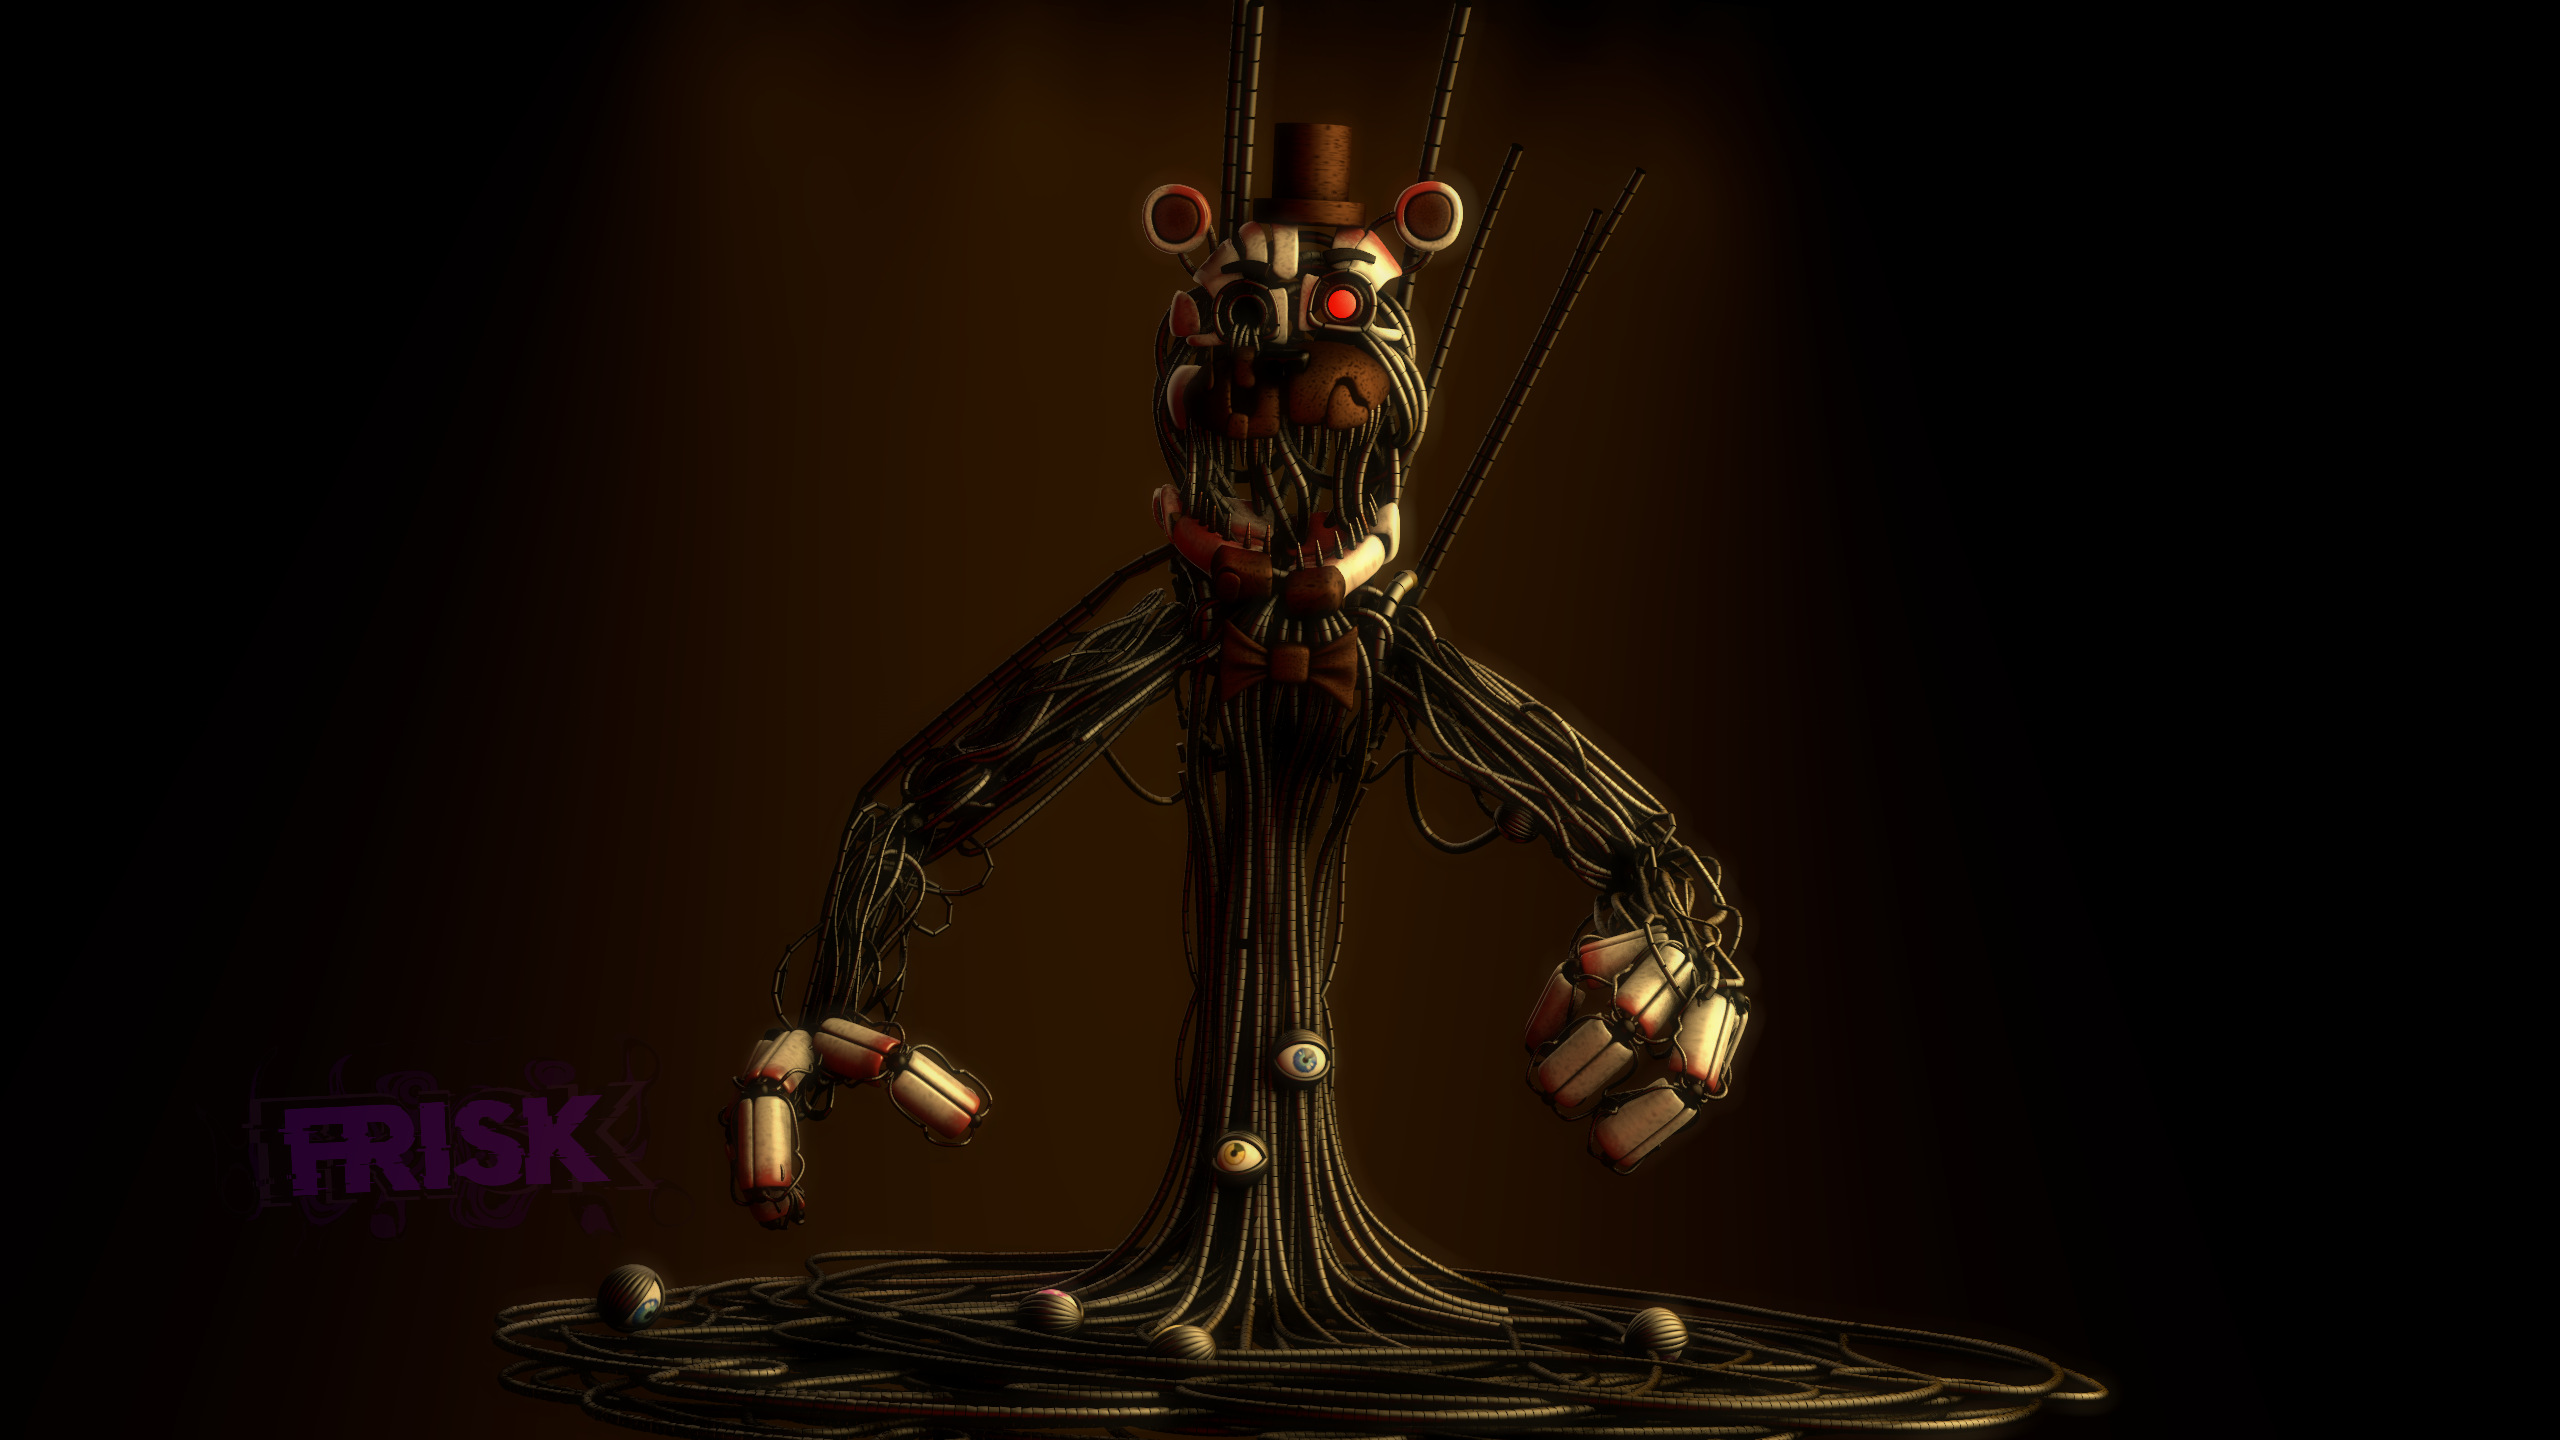 Sfm Fnaf 6) Molten Freddy in salvage Room by xXMrTrapXx on DeviantArt